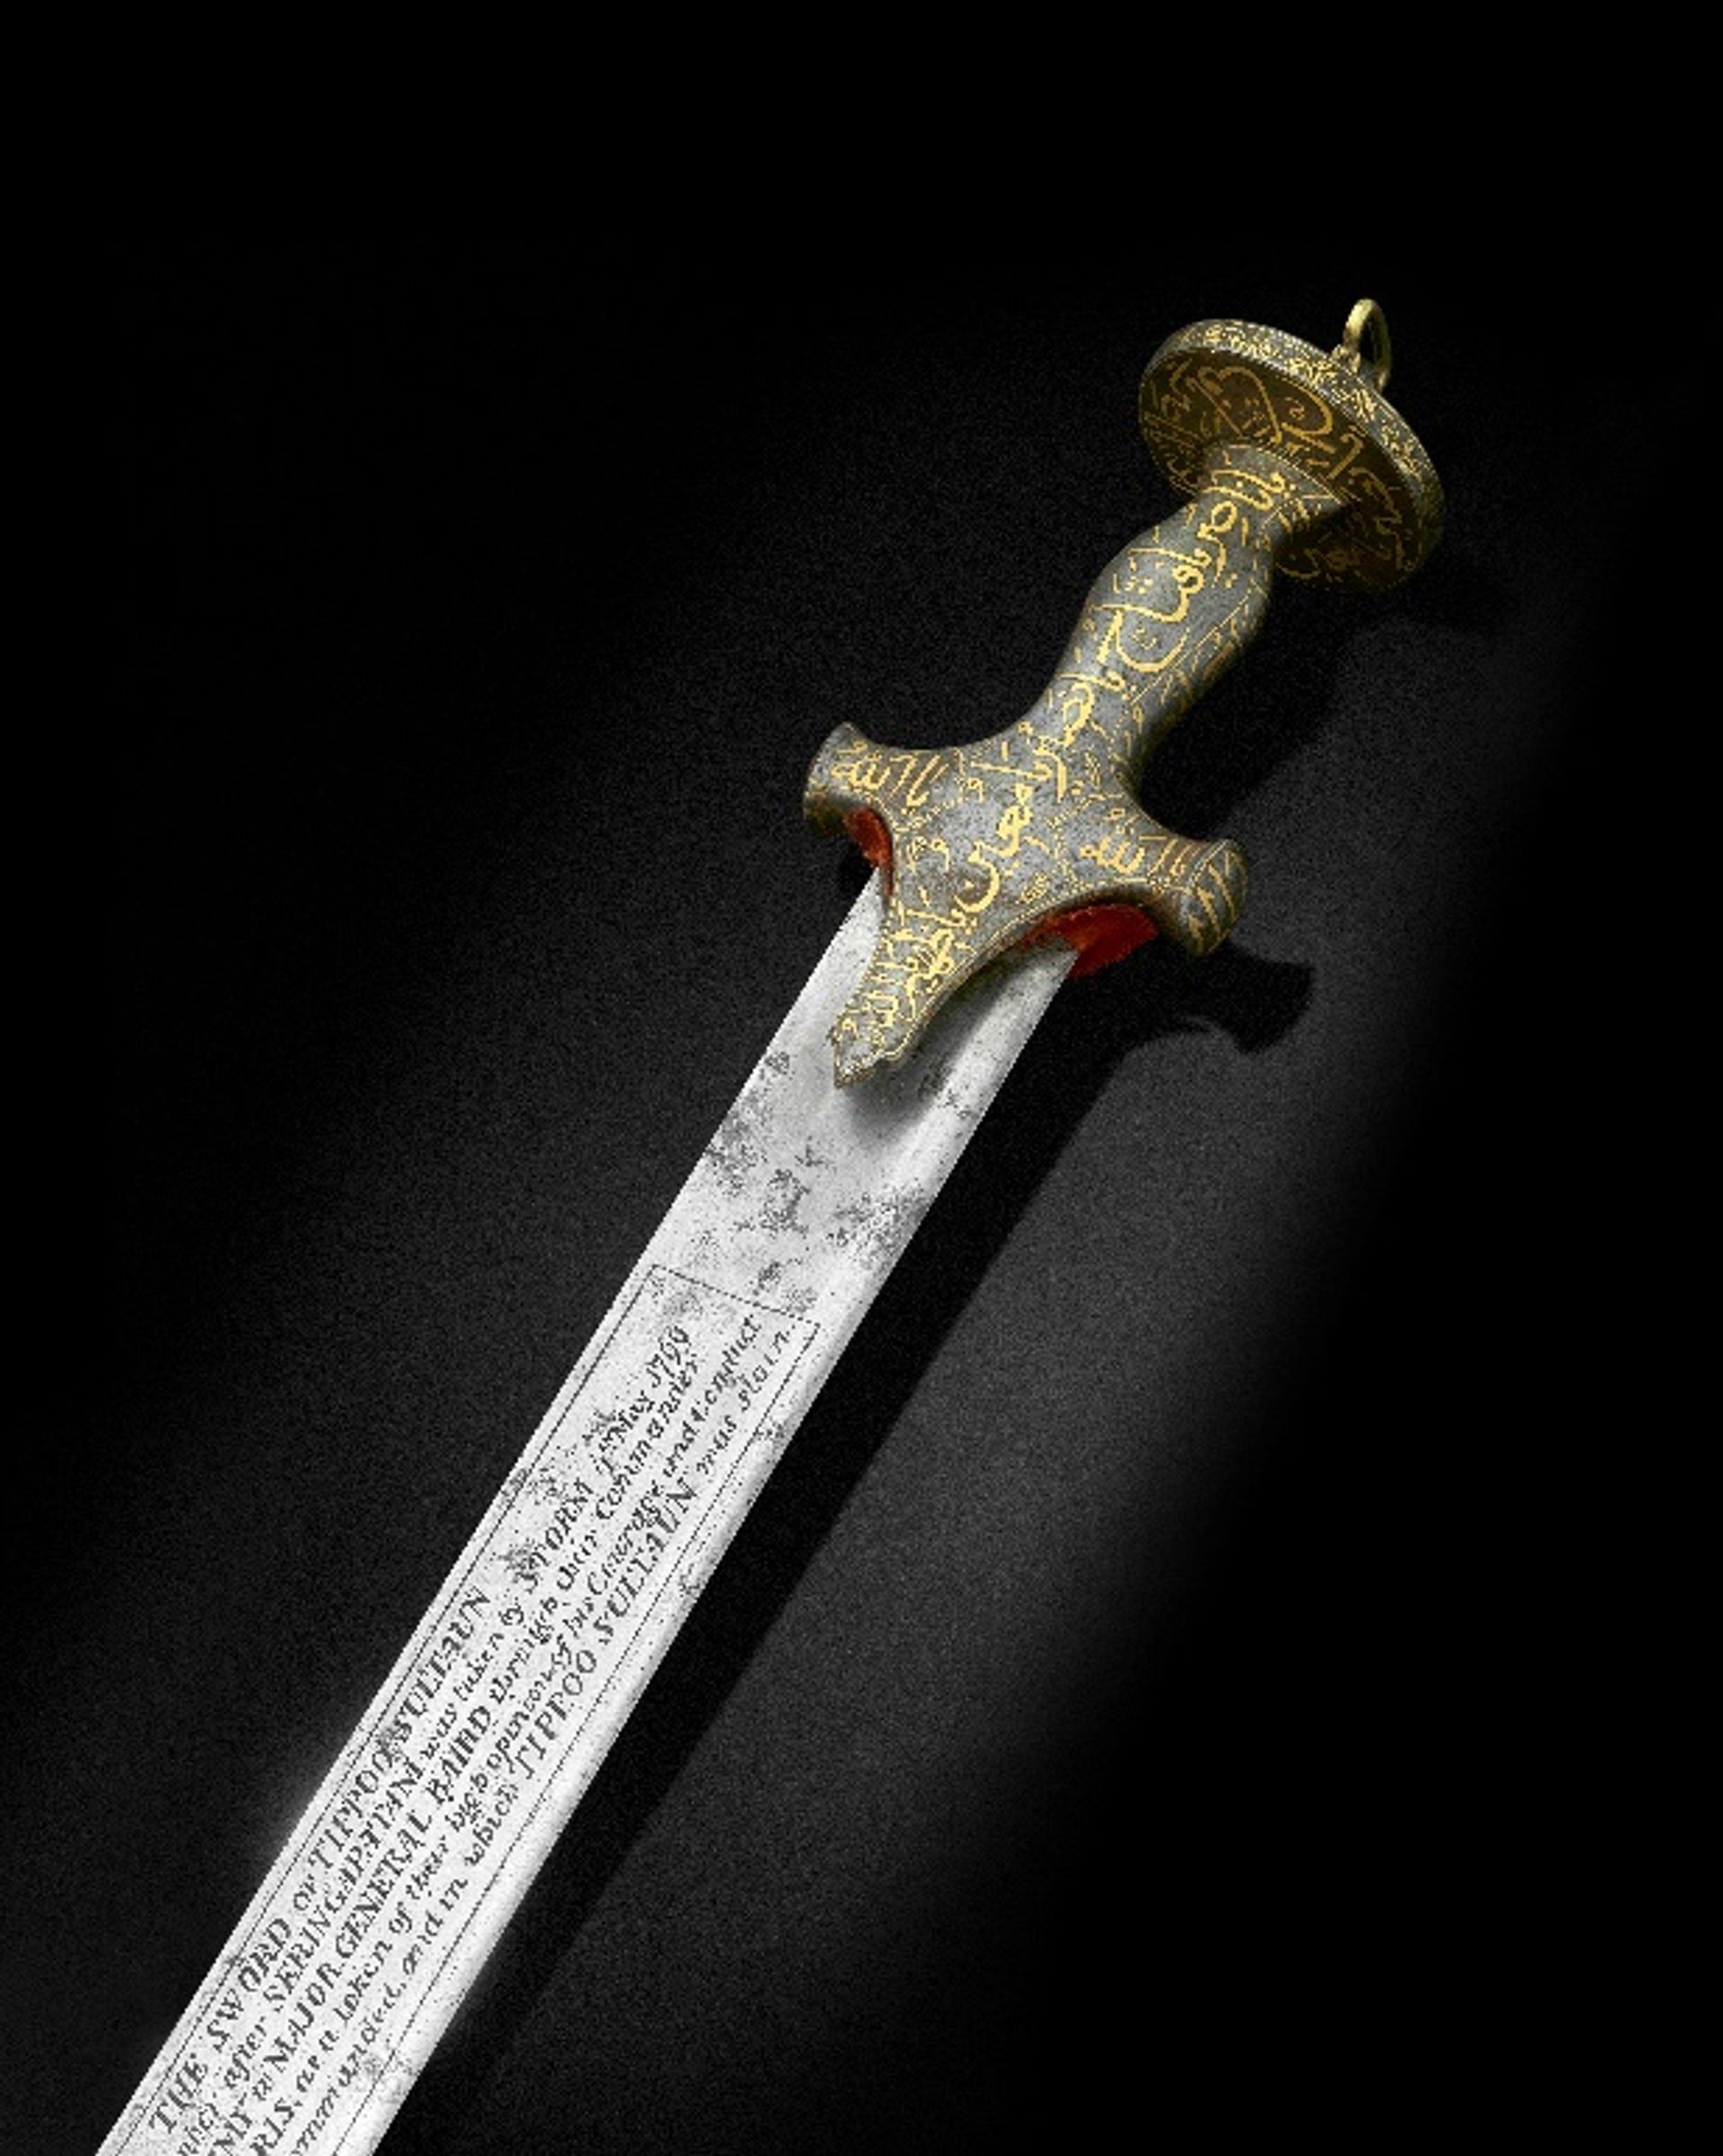 L’épée de Tipû Sultân, vendue 14 millions de livres sterling chez Bonhams le 23 mai 2023. Courtesy Bonhams

